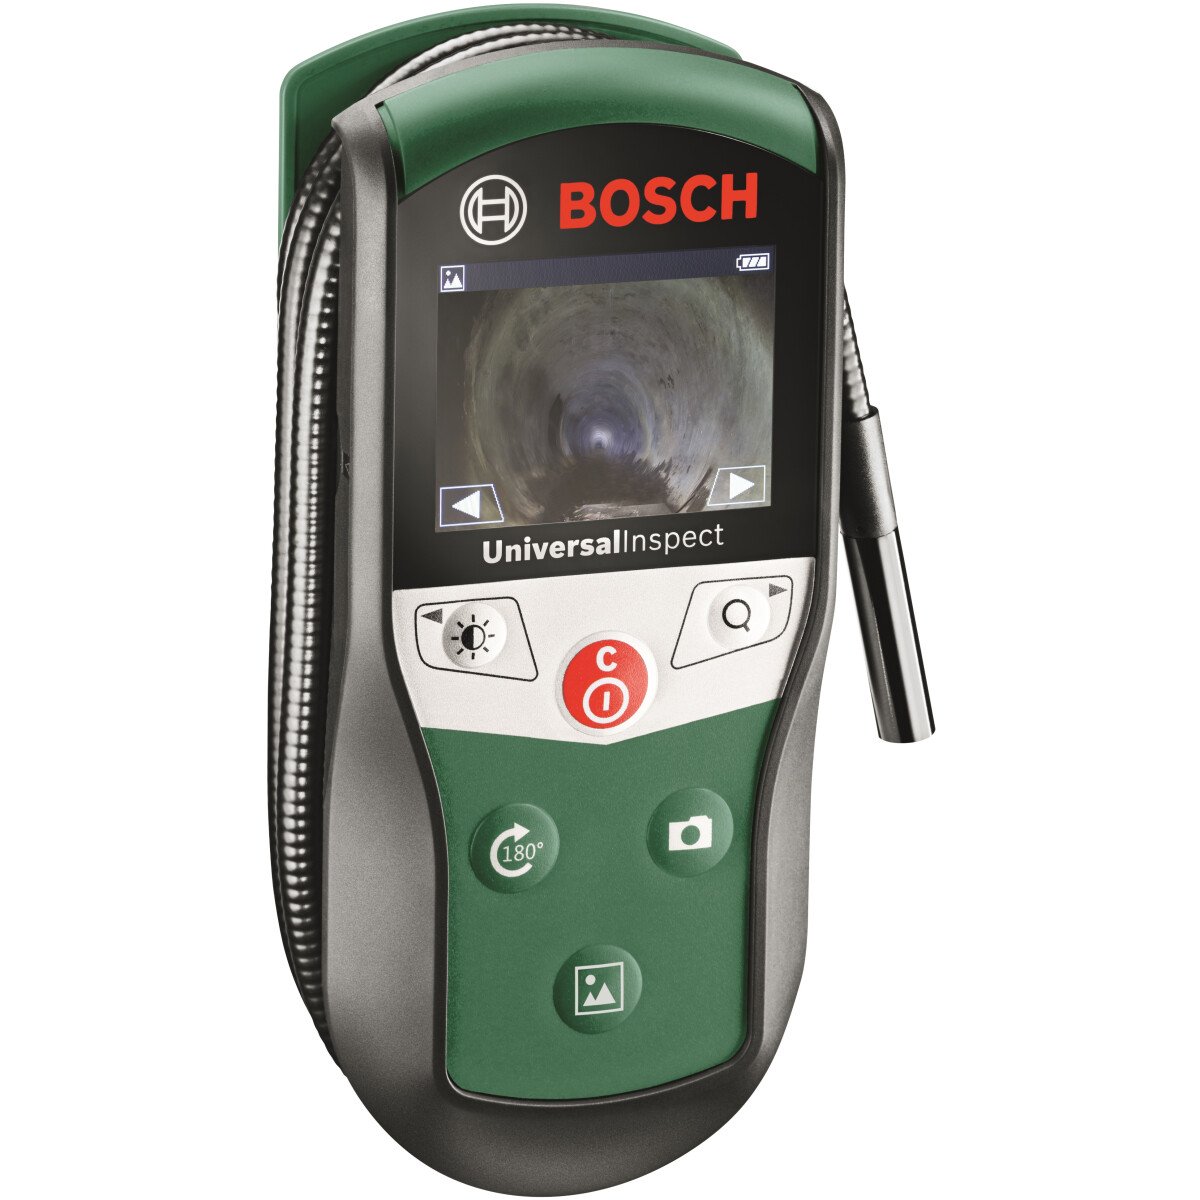 Bosch UniversalInspect Inspection Camera